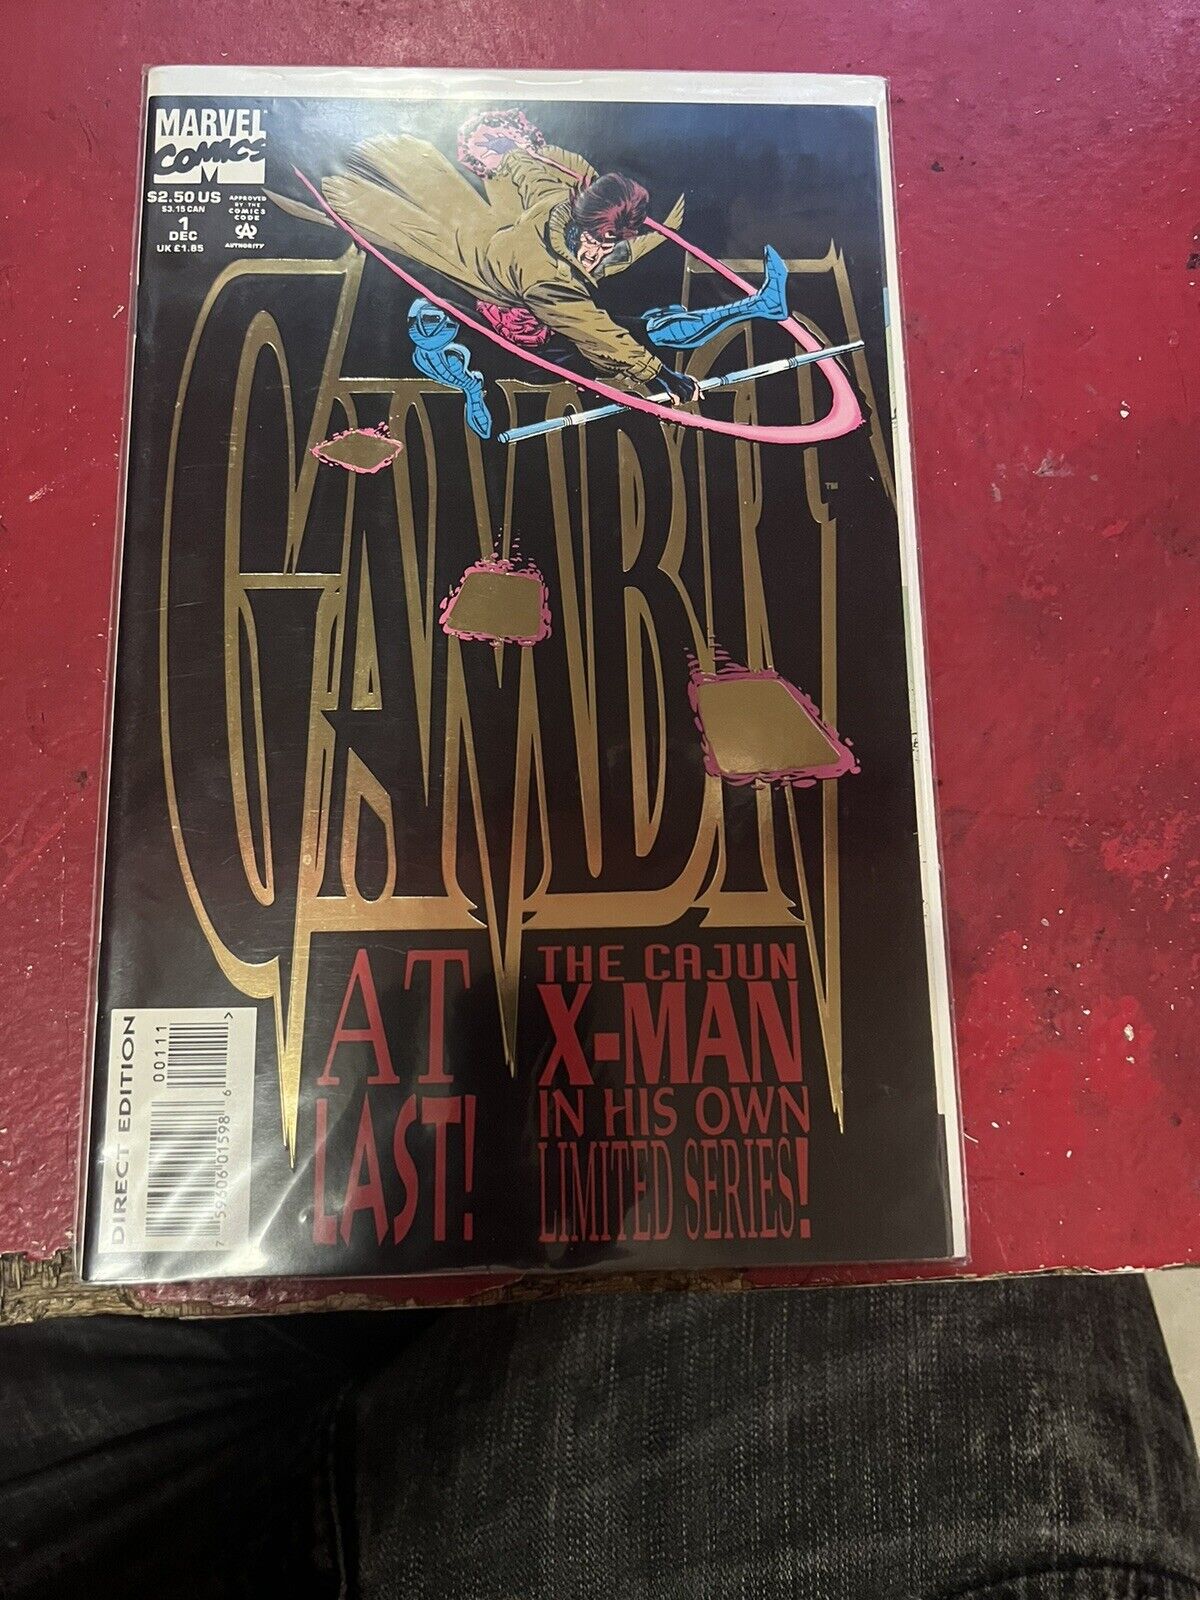 Gambit #1 (Marvel Comics December 1993)